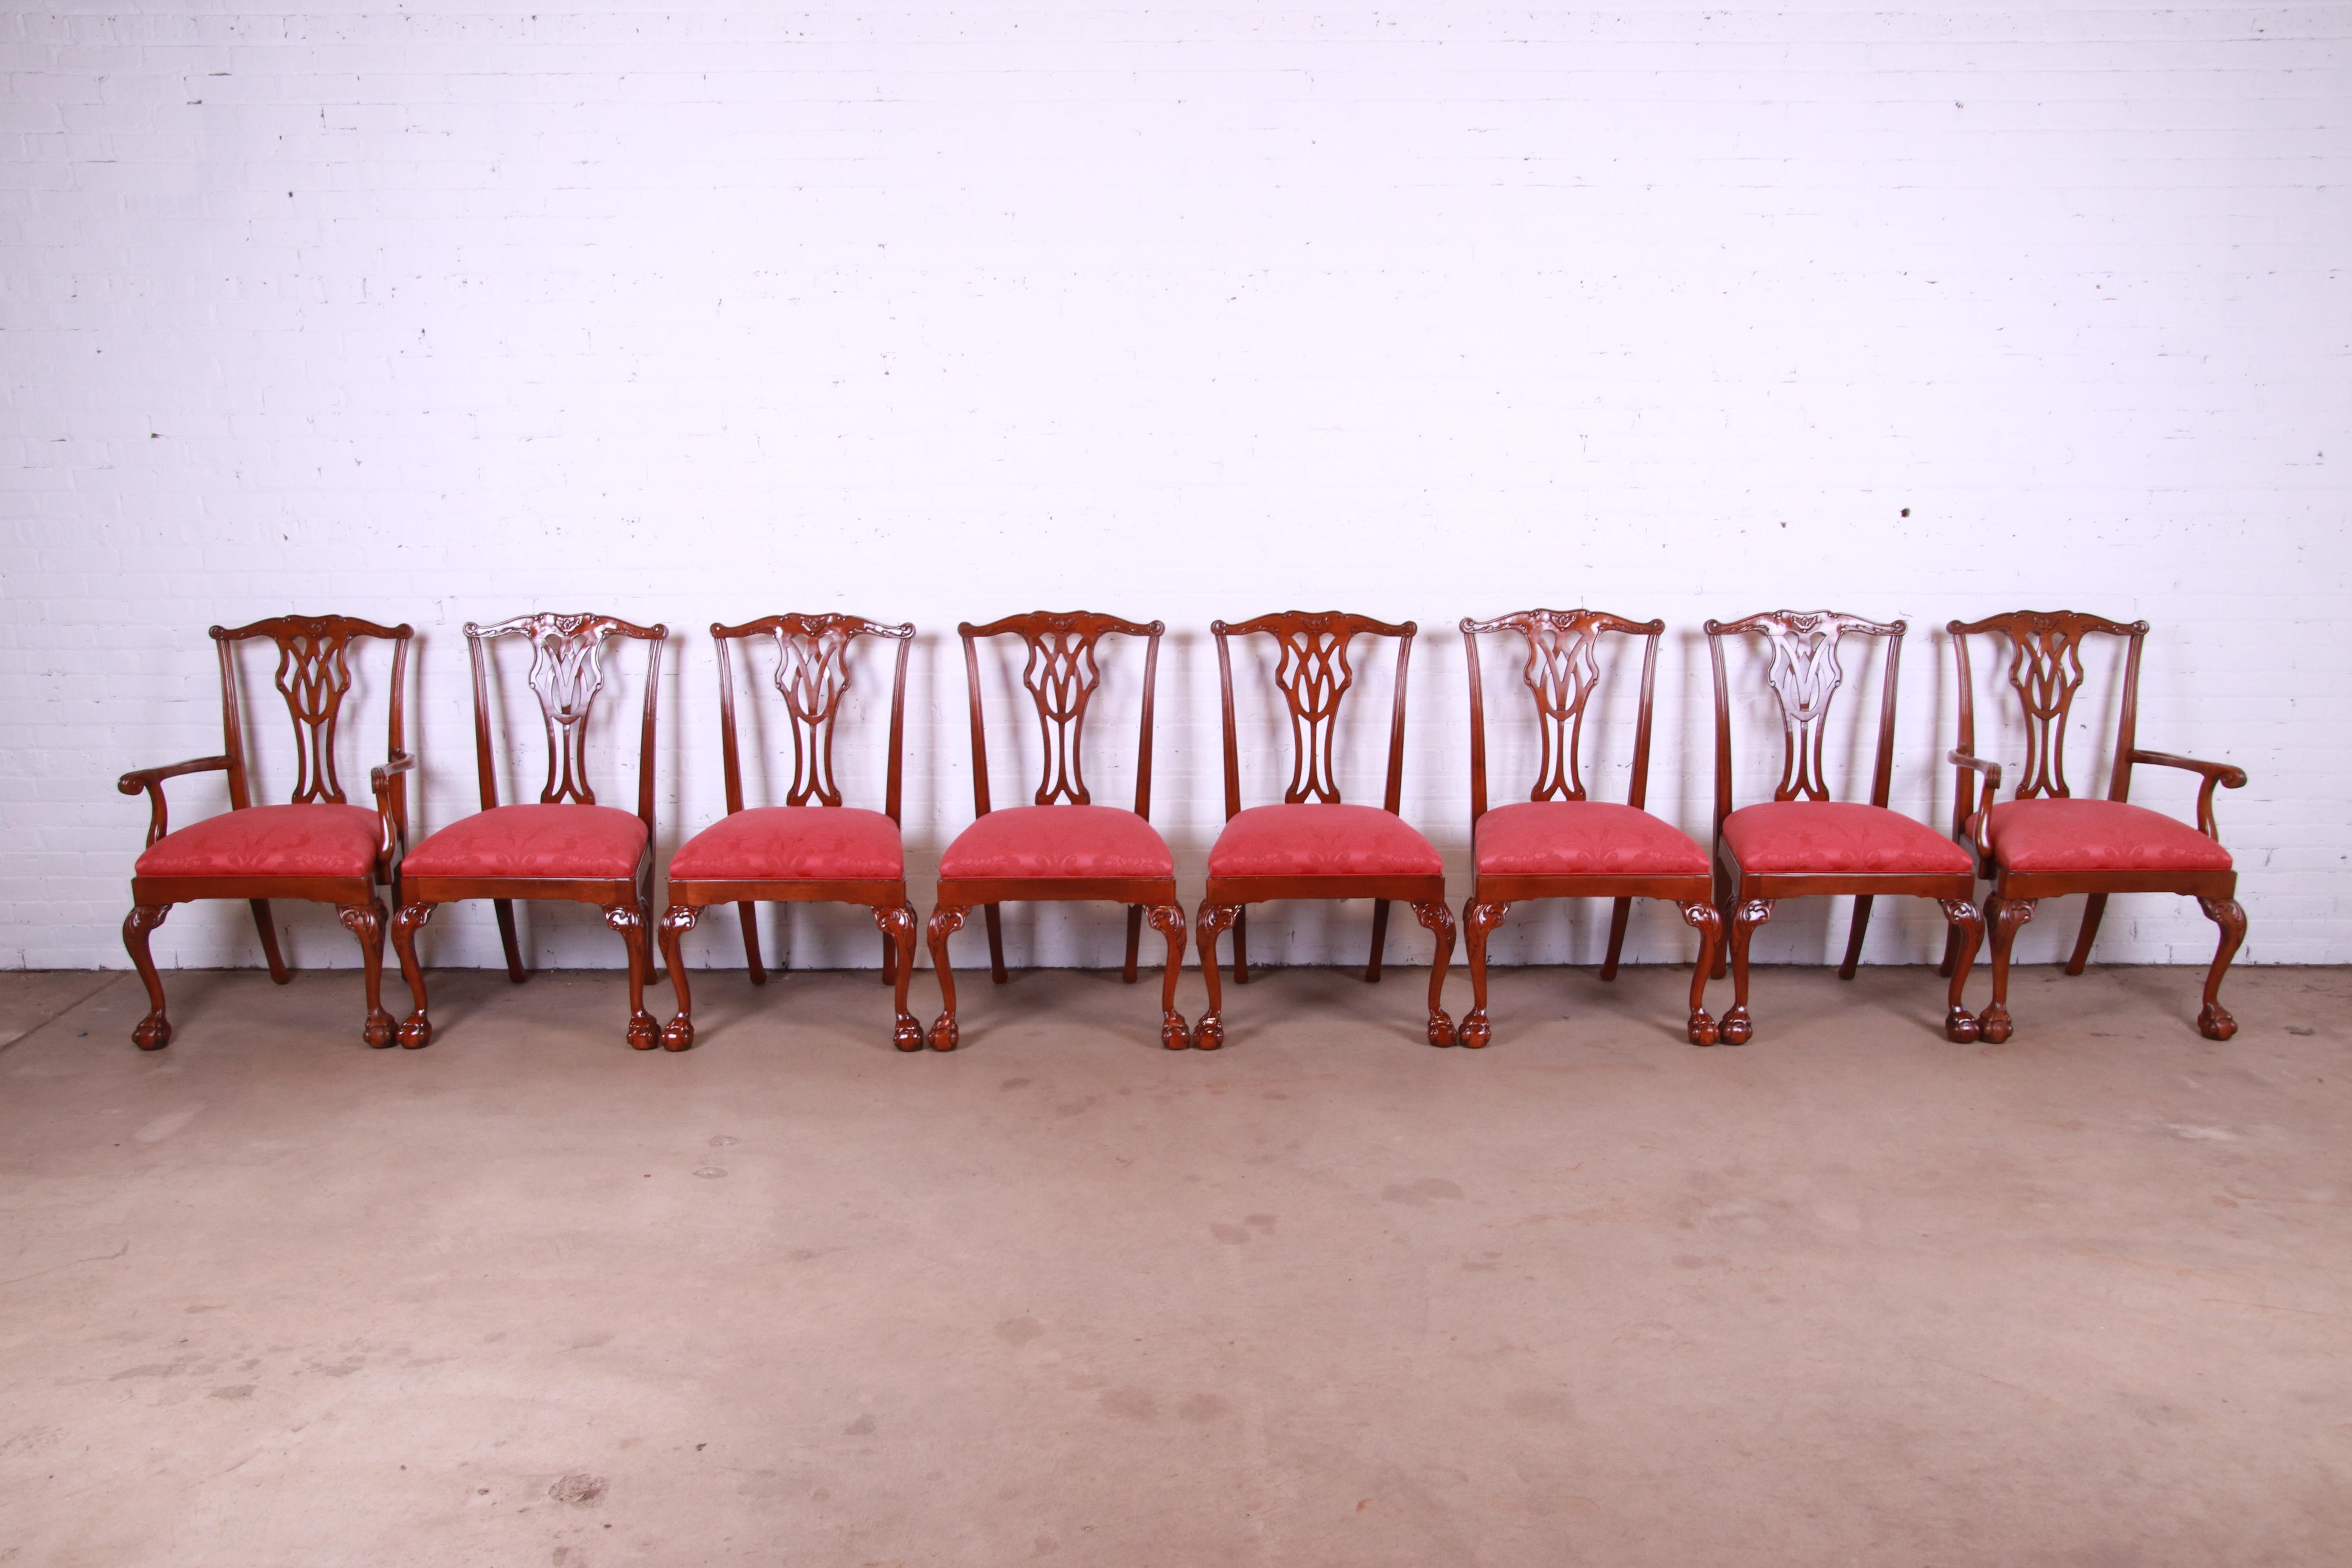 Ein prächtiger Satz von acht Esszimmerstühlen im Chippendale-Stil mit Kugel- und Klauenfüßen

Von Councill Furniture

USA, ca. 1980er Jahre

Massive geschnitzte Mahagoni-Rahmen, mit rotem Damast gepolstert Sitze.

Maße: 25.25 